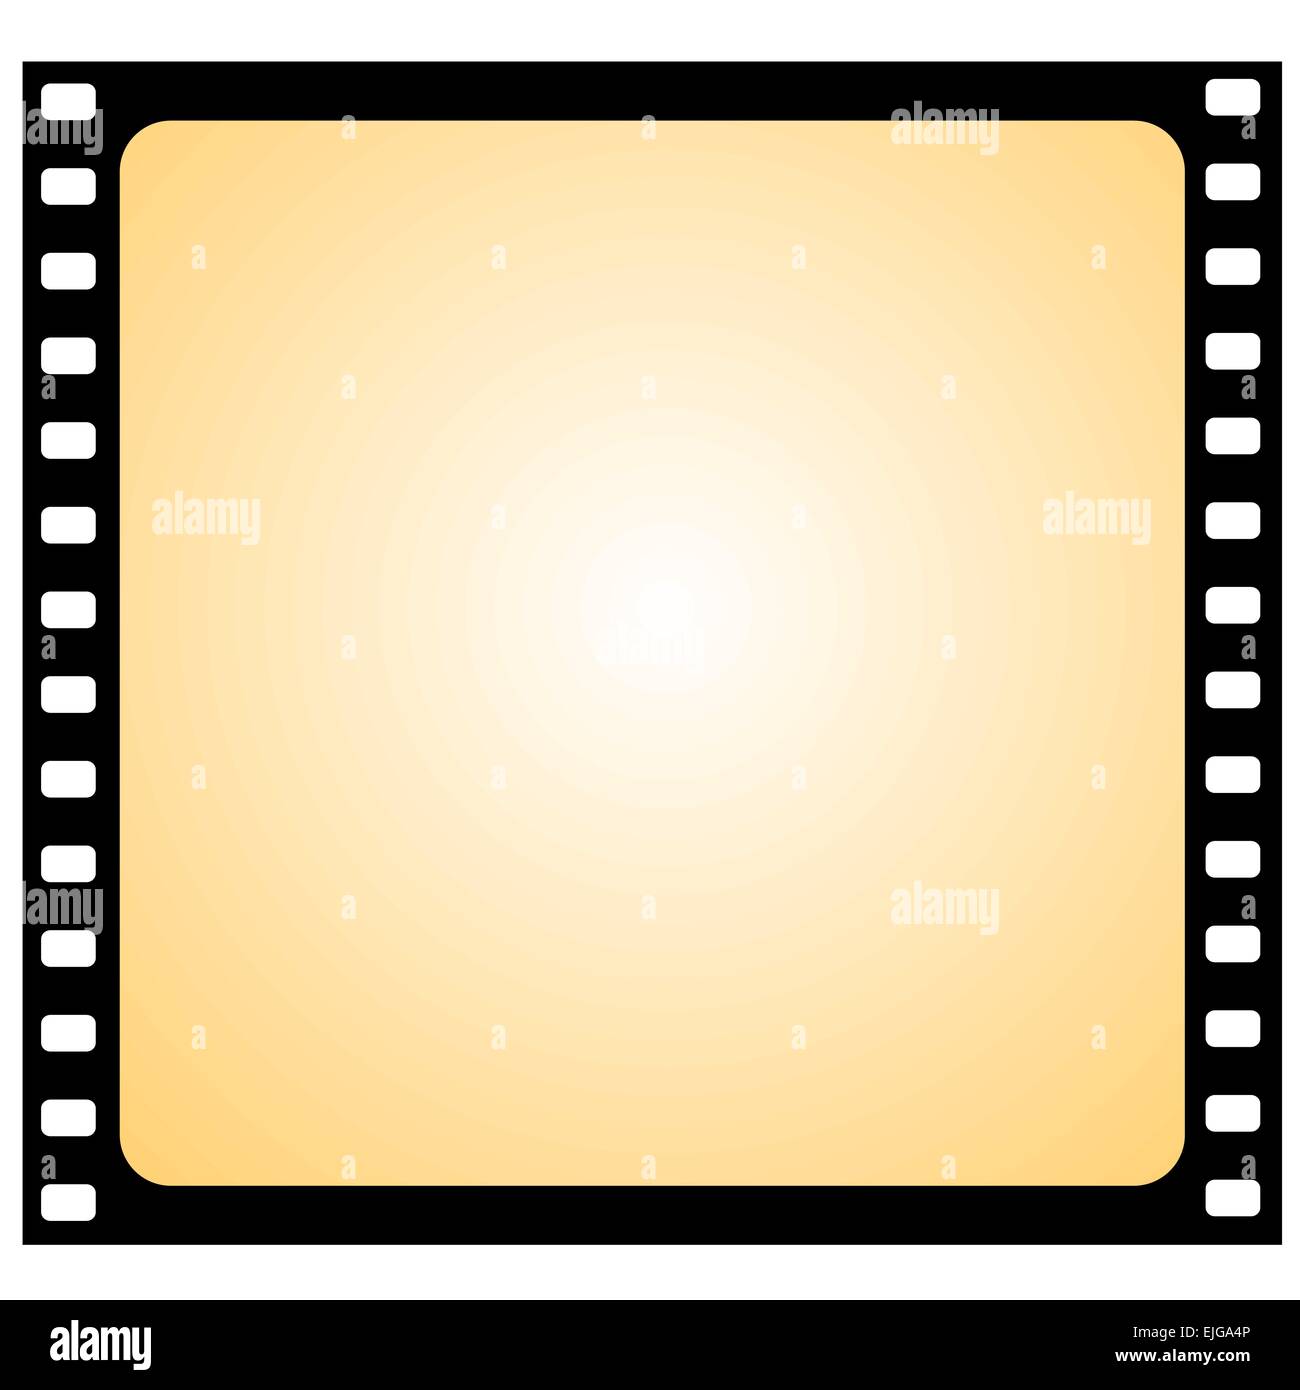 Abbildung von der Film-Frame - Vektor Stock Vektor